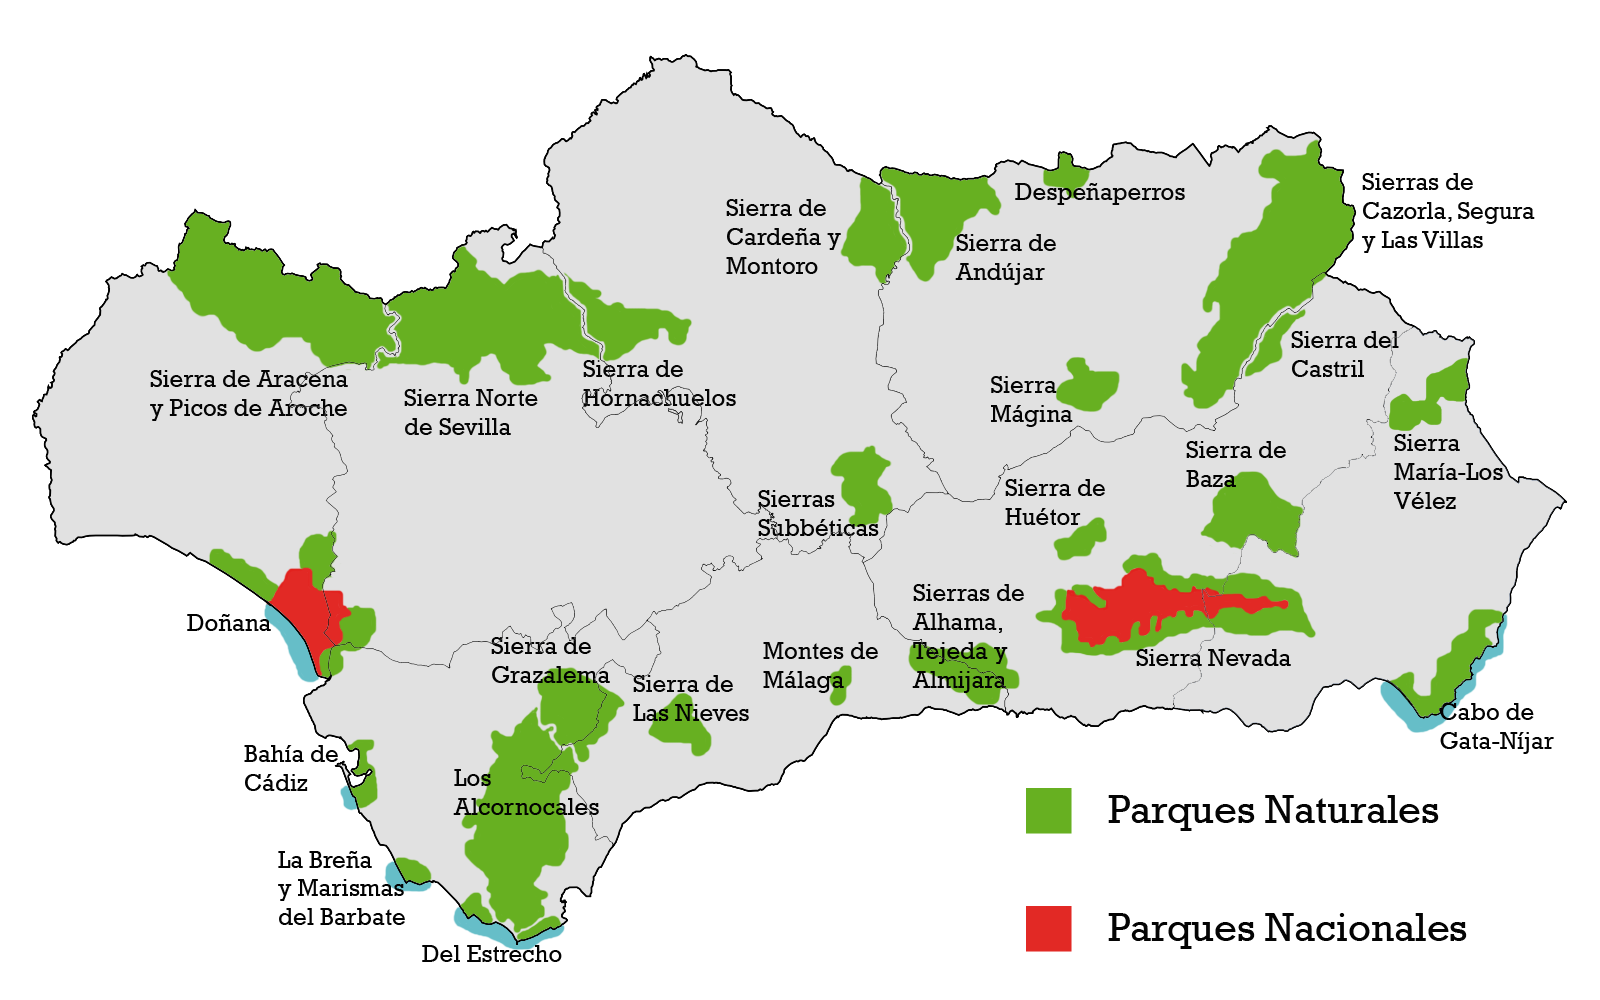 Parques naturales y nacionales de Andalucía 2010